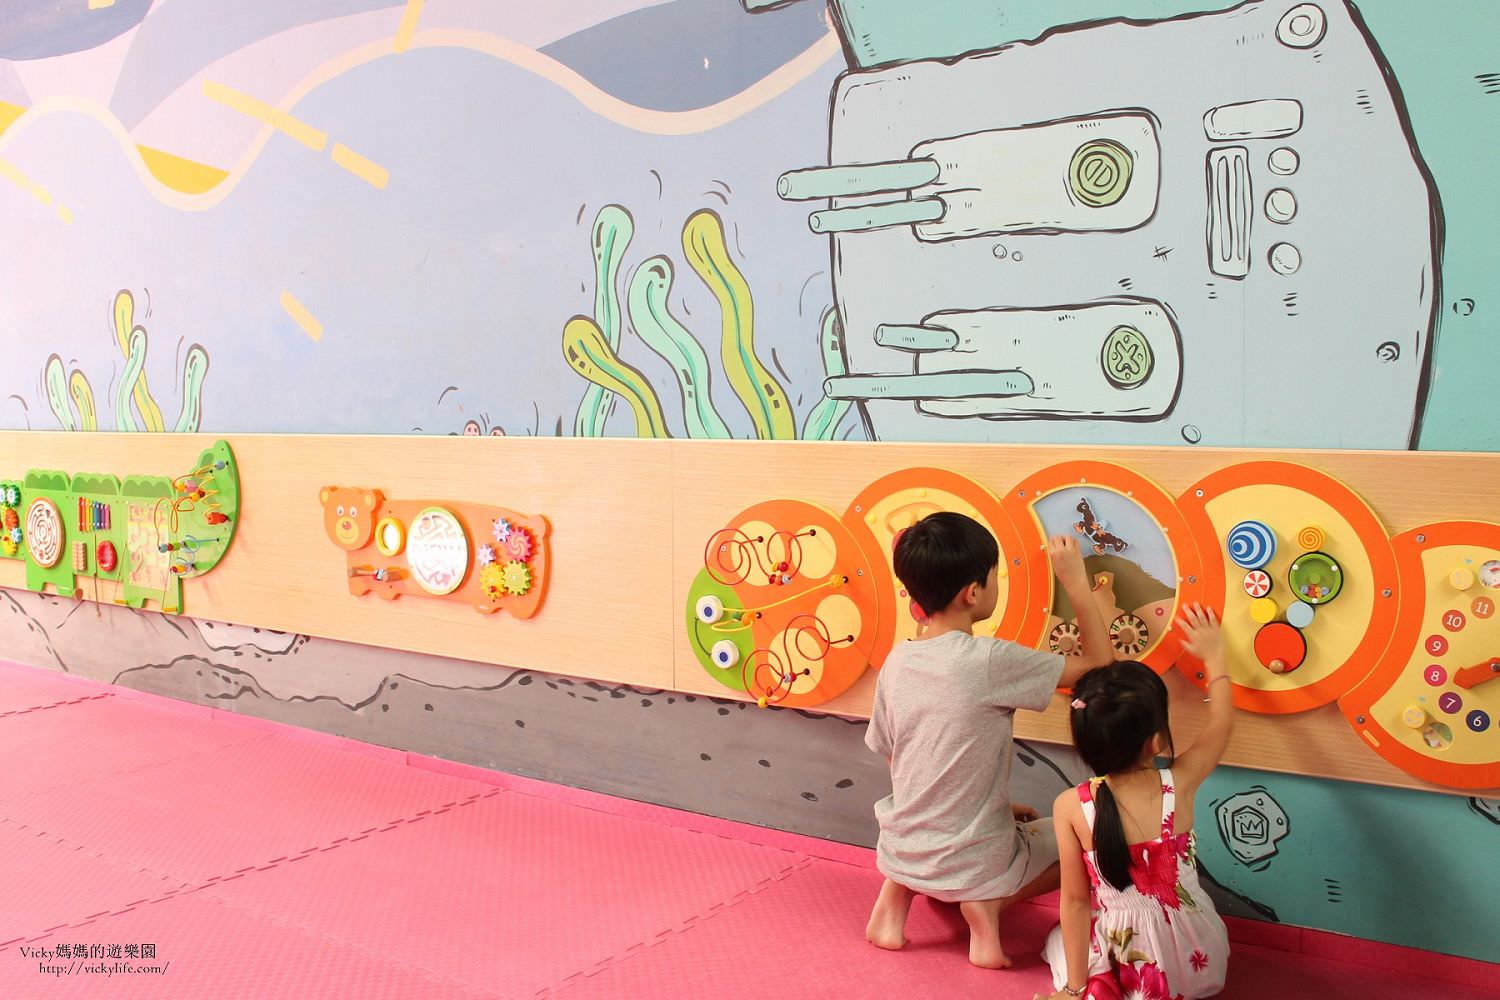 台南免費活動︱蕭壠文化園區兒童遊戲館：免費玩！哪有這等好康，真的啦！只要線上預約就可以免費玩啦！